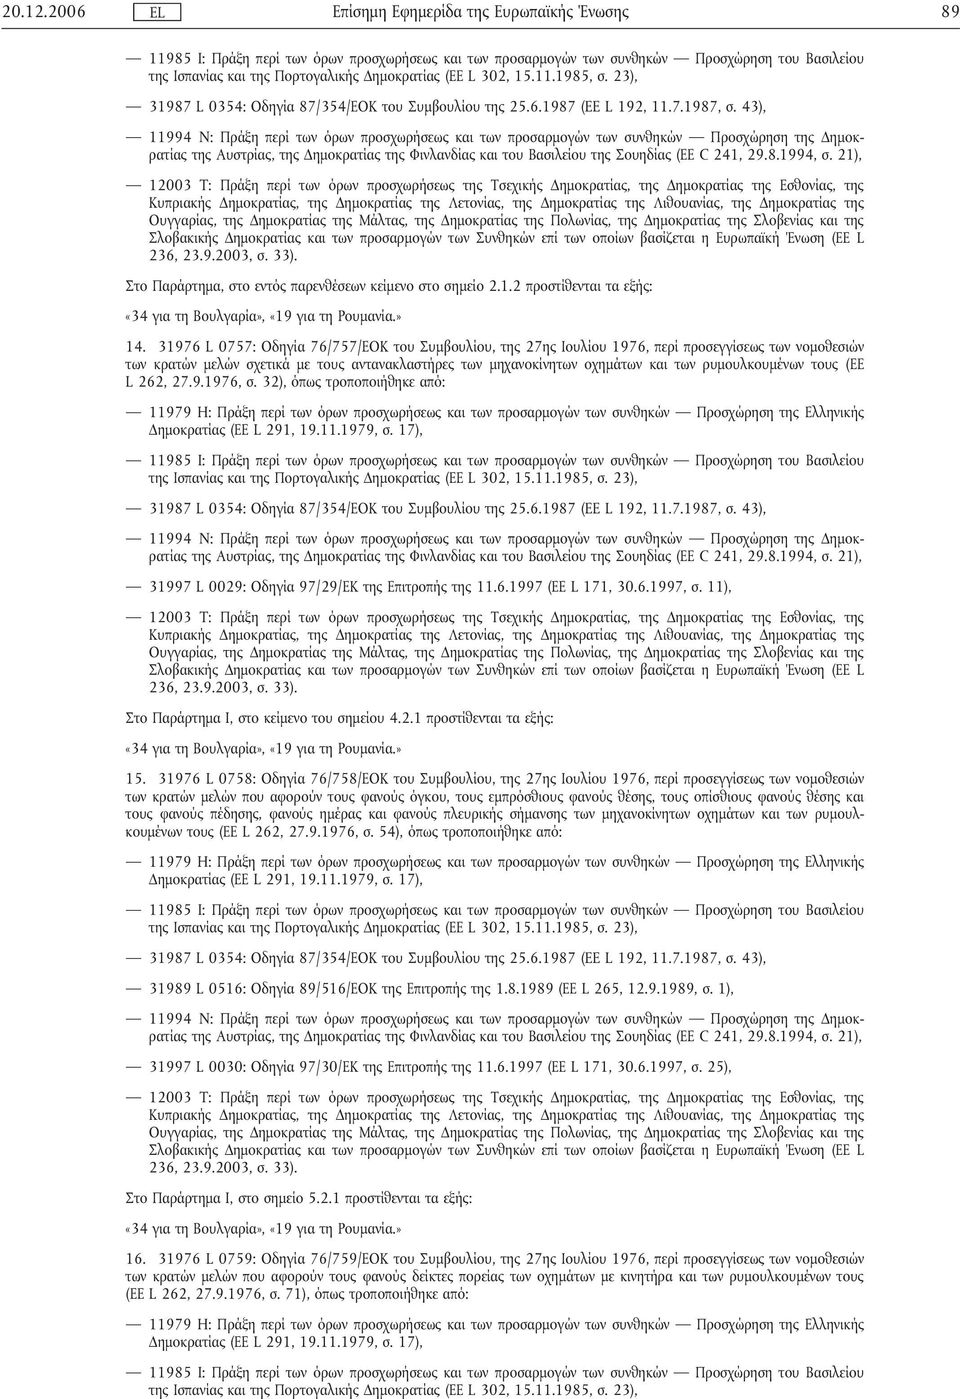 ρυµουλκουµένων τους (ΕΕ L 262, 27.9.1976, σ. 32), όπως τροποποιήθηκε από: 31997 L 0029: Οδηγία 97/29/ΕΚ της Επιτροπής της 11.6.1997 (ΕΕ L 171, 30.6.1997, σ.